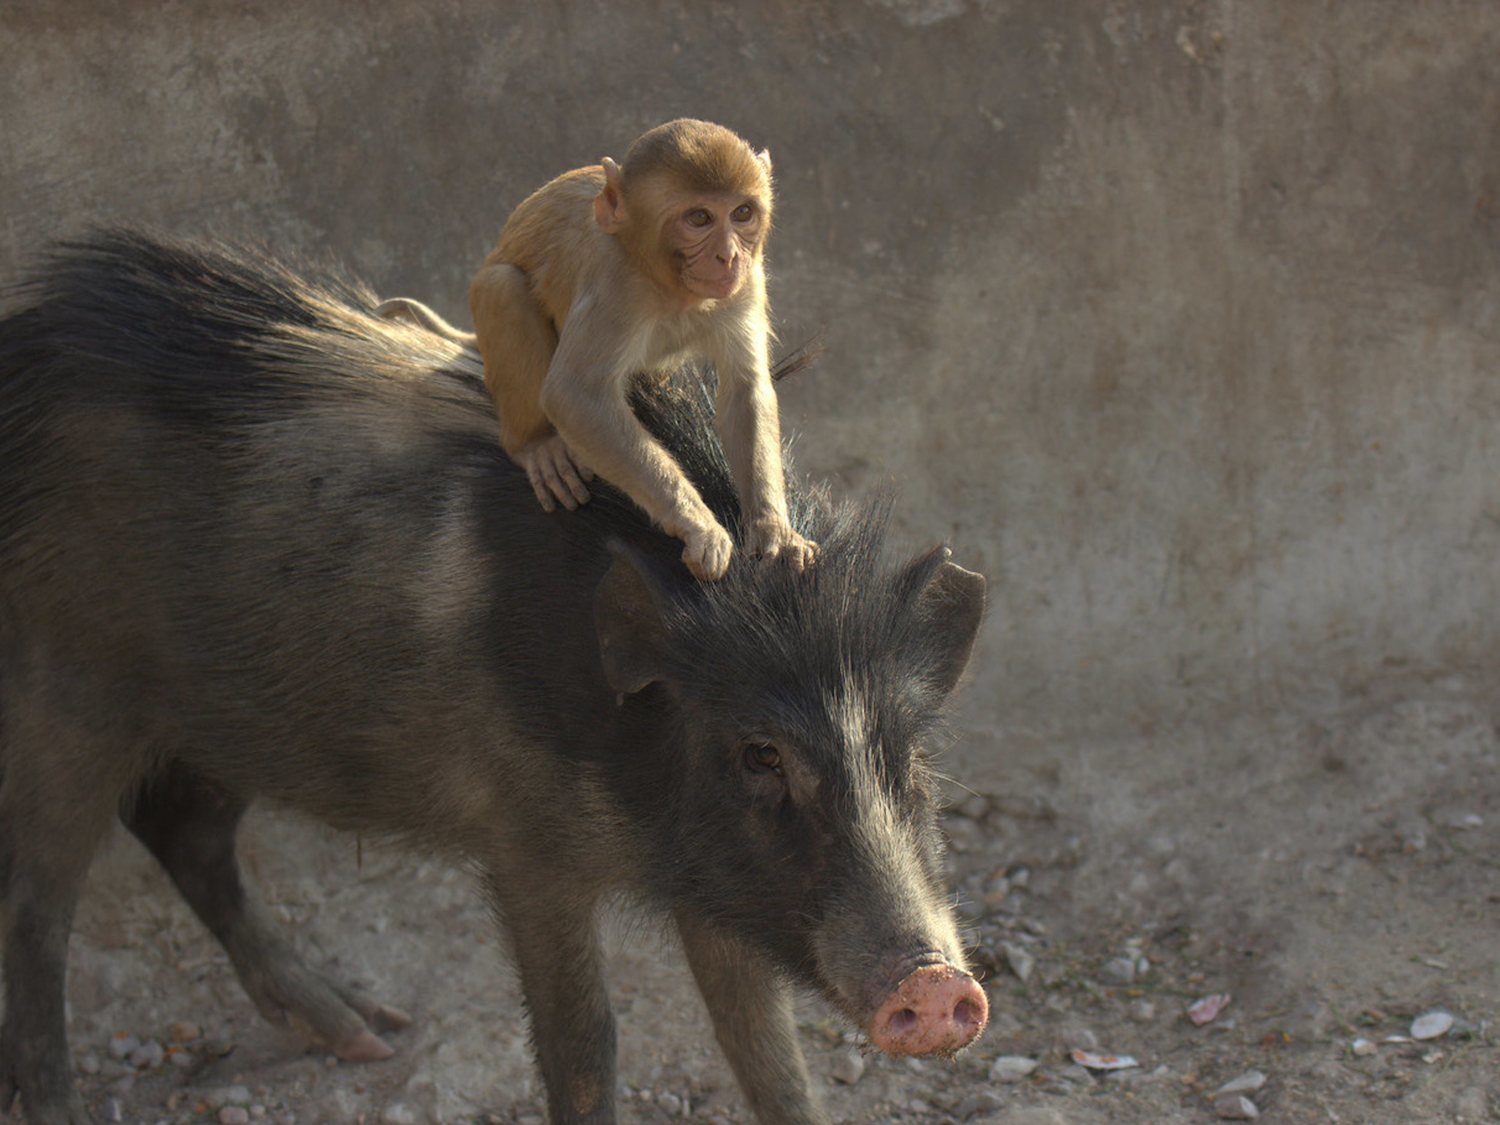 Procedemos del cruce entre el mono y el cerdo, según un científico